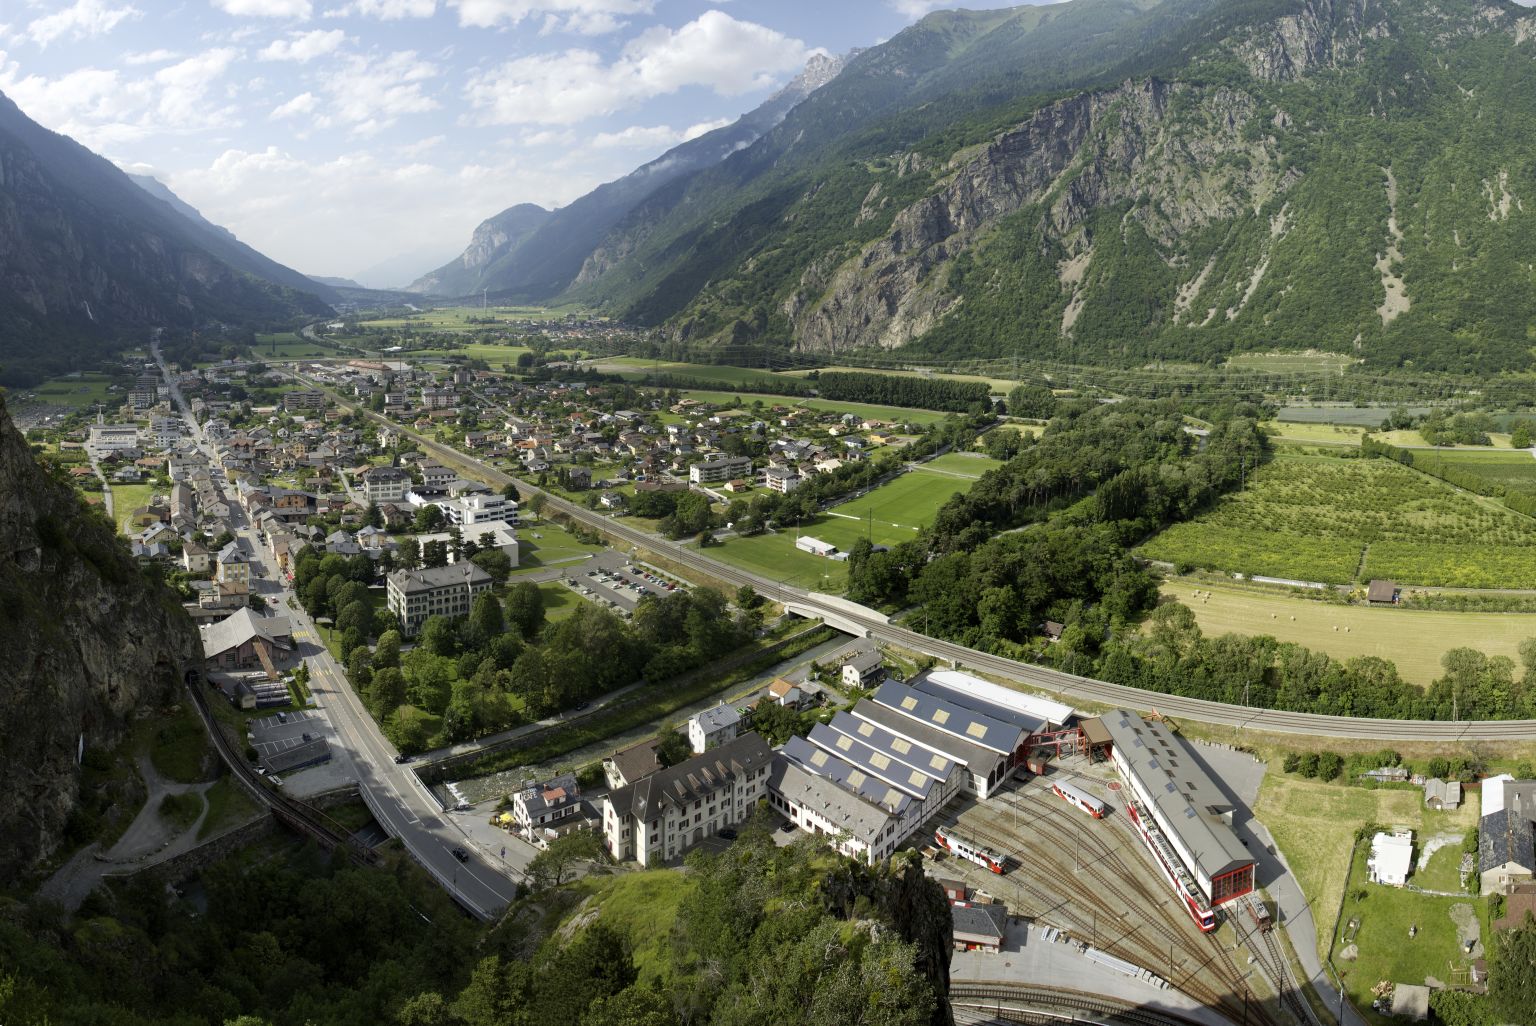 Le village de Vernayaz vu de haut avec la Cascade de la Pissevache visible. Valais, Suisse